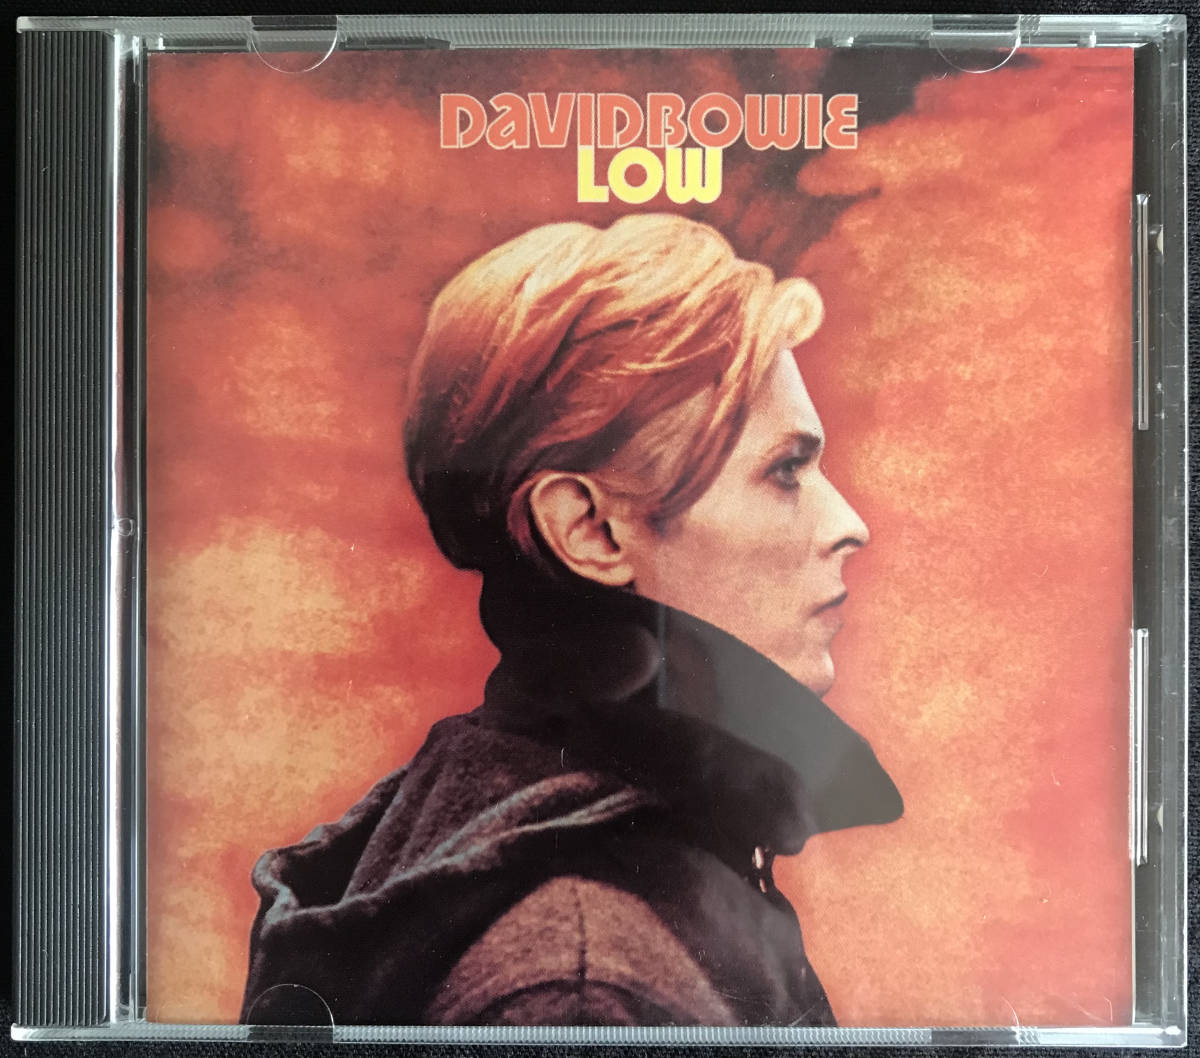 CD / David Bowie / Low / デヴィッド・ボウイ / Rykodisc RCD 10142 / 1991 / [USA盤] /  リイシュー リマスター+3ボーナストラック